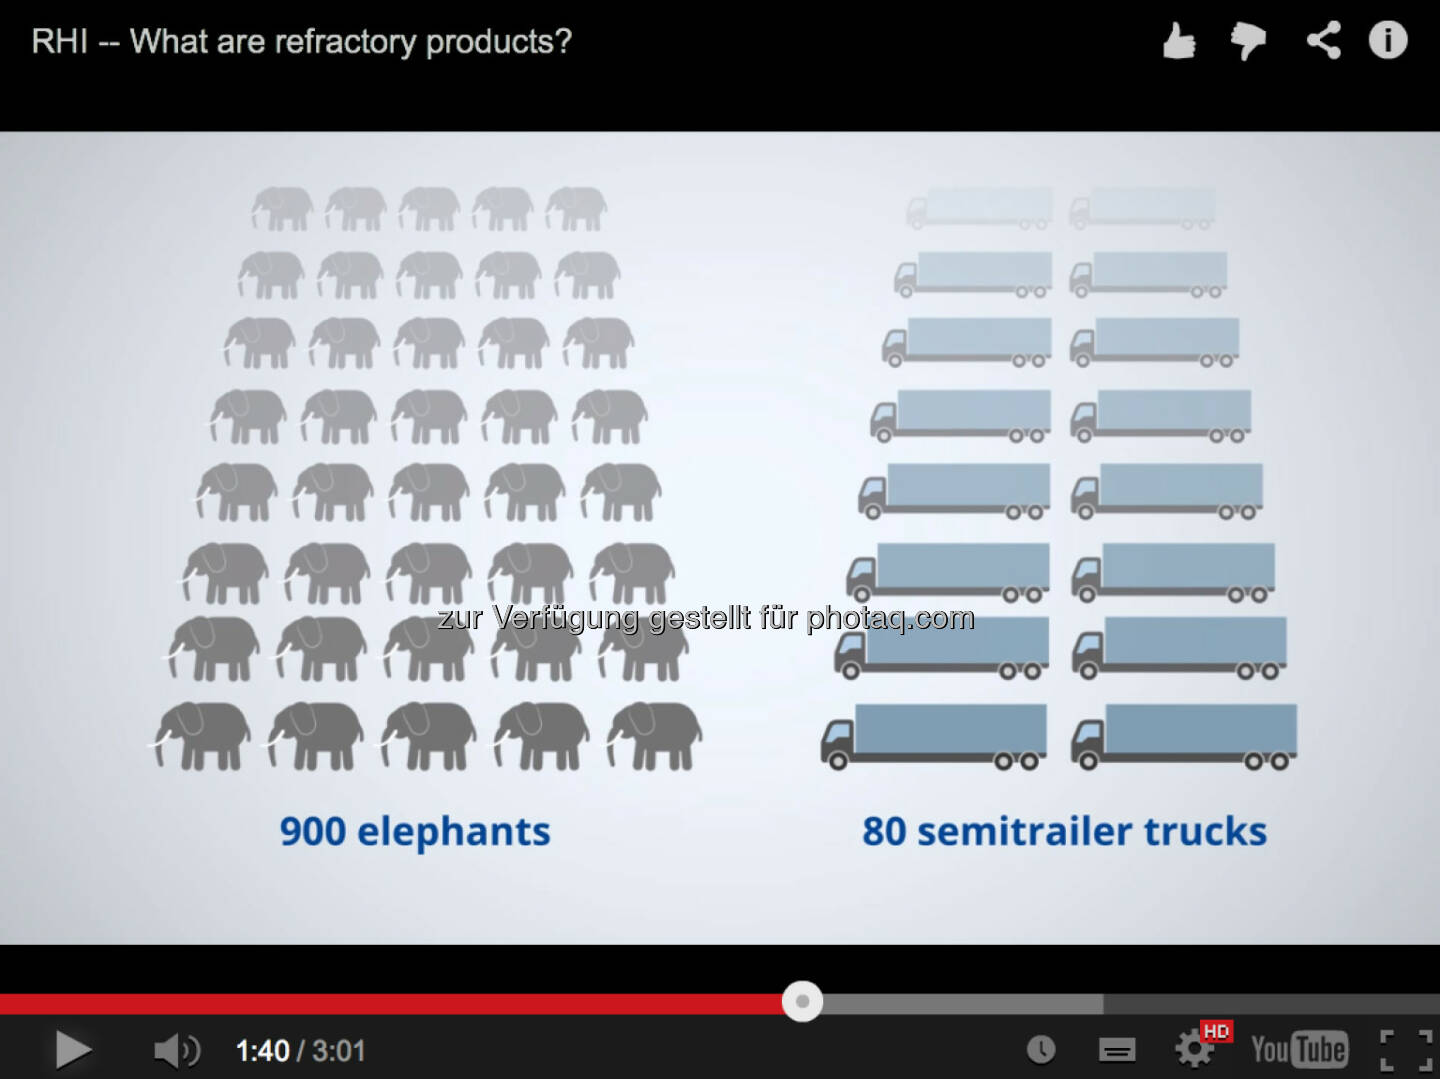 Die Sache mit dem 900 Elefanten und 80 Trucks http://www.youtube.com/watch?v=FCgmTZ3UGSY